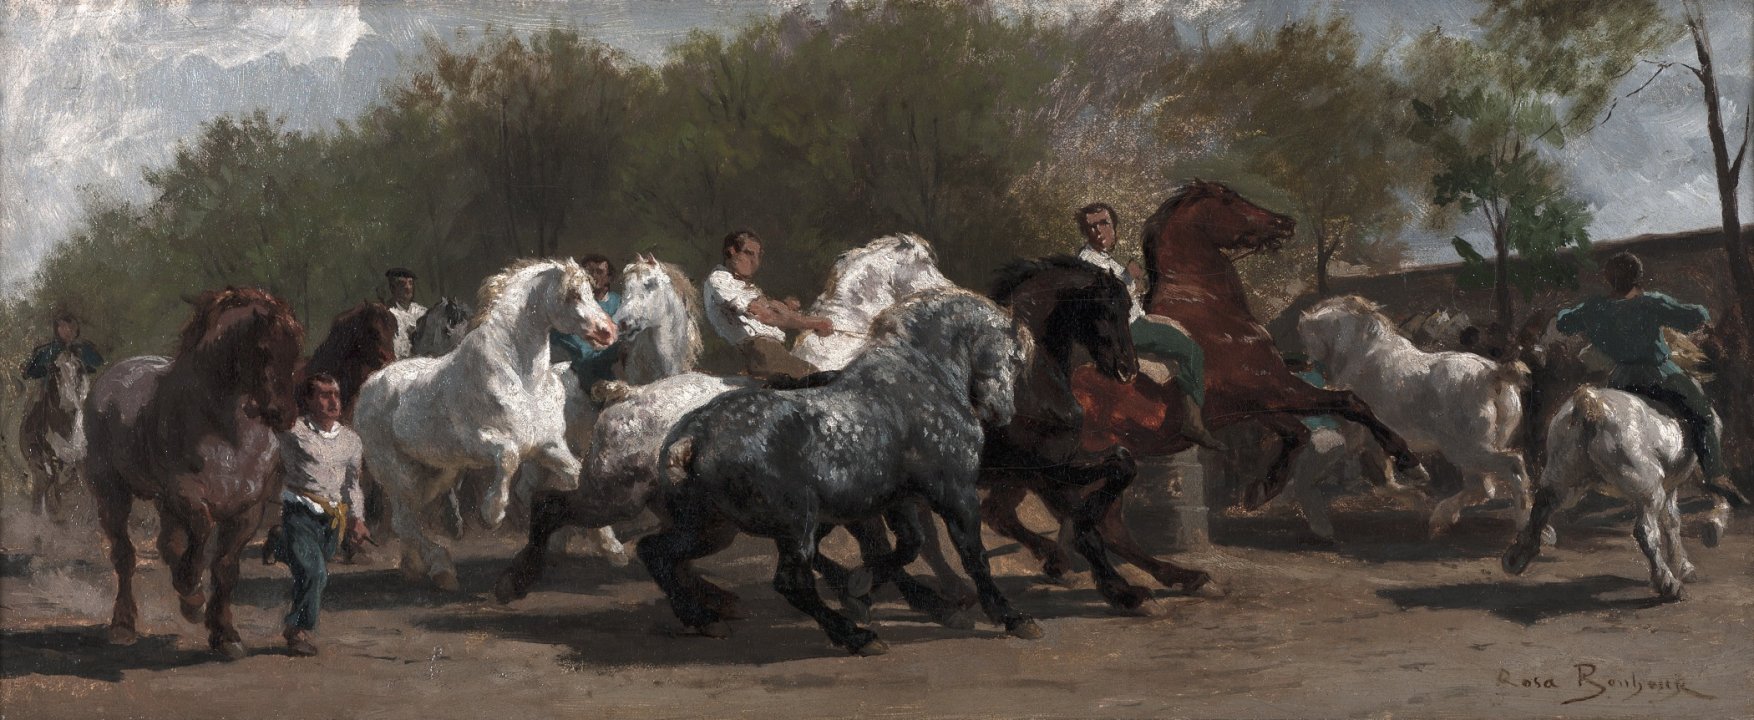 罗莎·博纳尔（Rosa Bonheur）-Le Marché aux chevaux（马展），1852年油画 法国